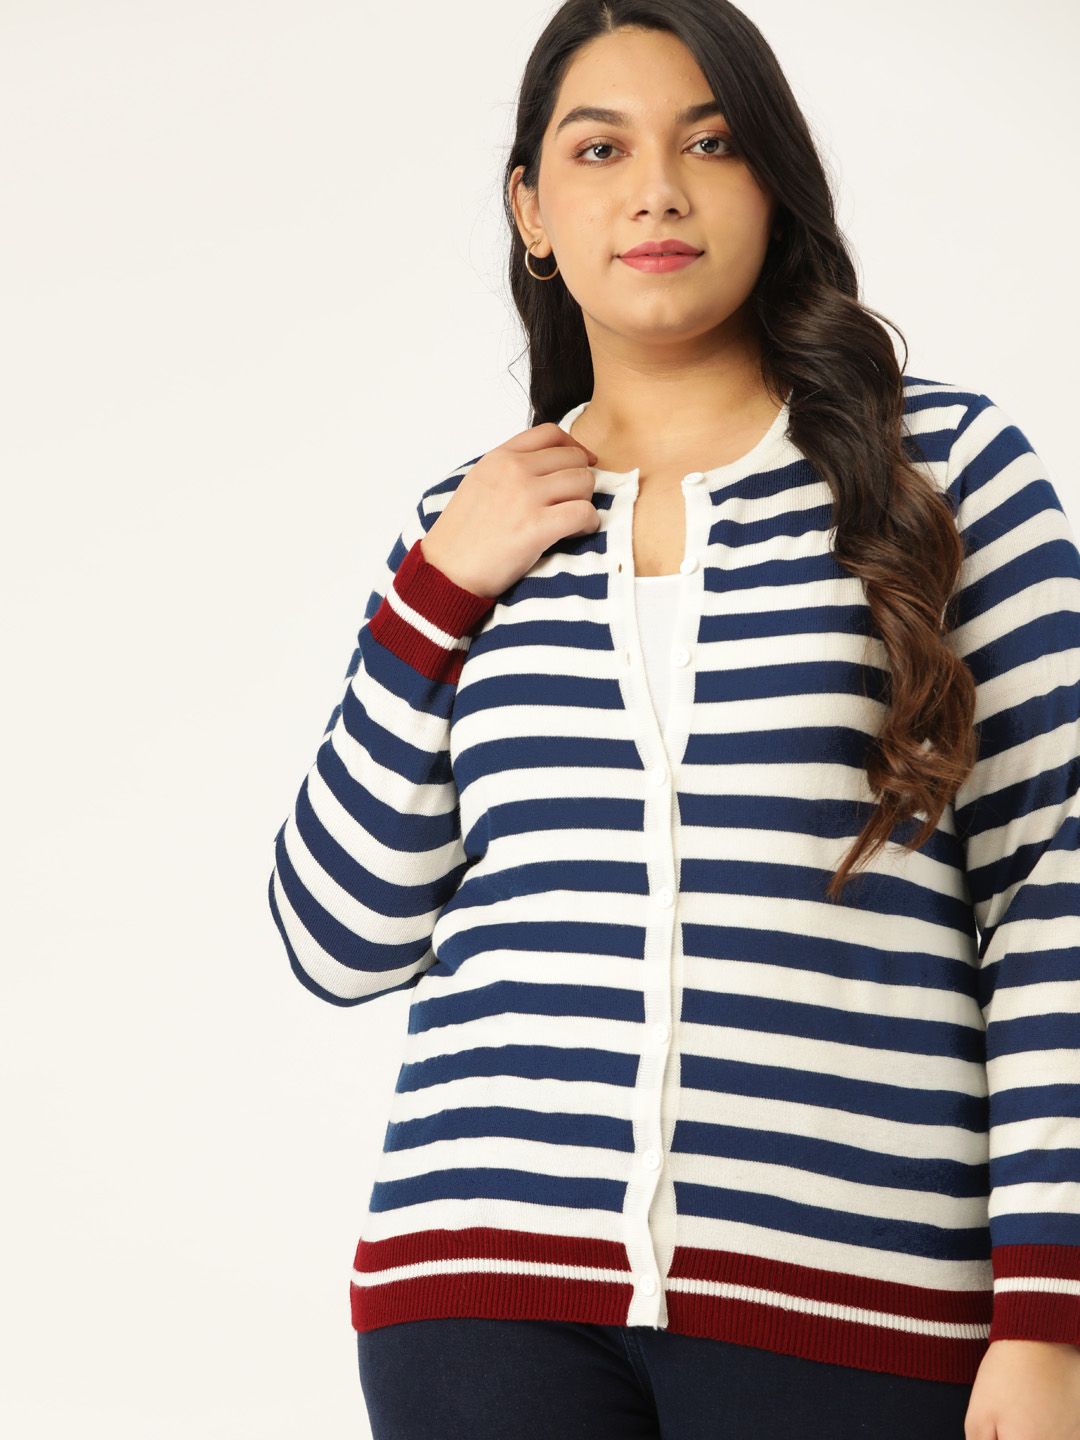 Sztori Women Plus Size White & Navy Blue Striped Cardigan Price in India